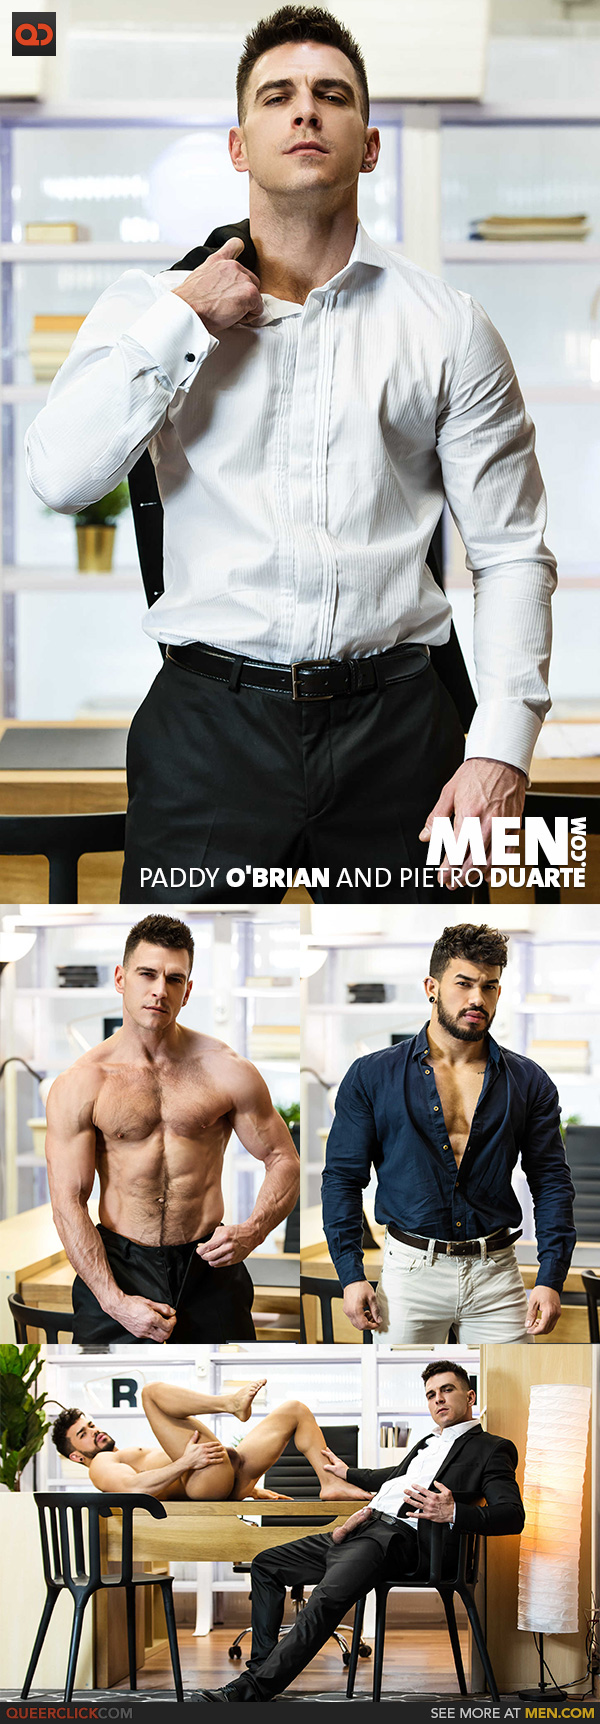 Men.com:  Paddy O'Brian and Pietro Duarte